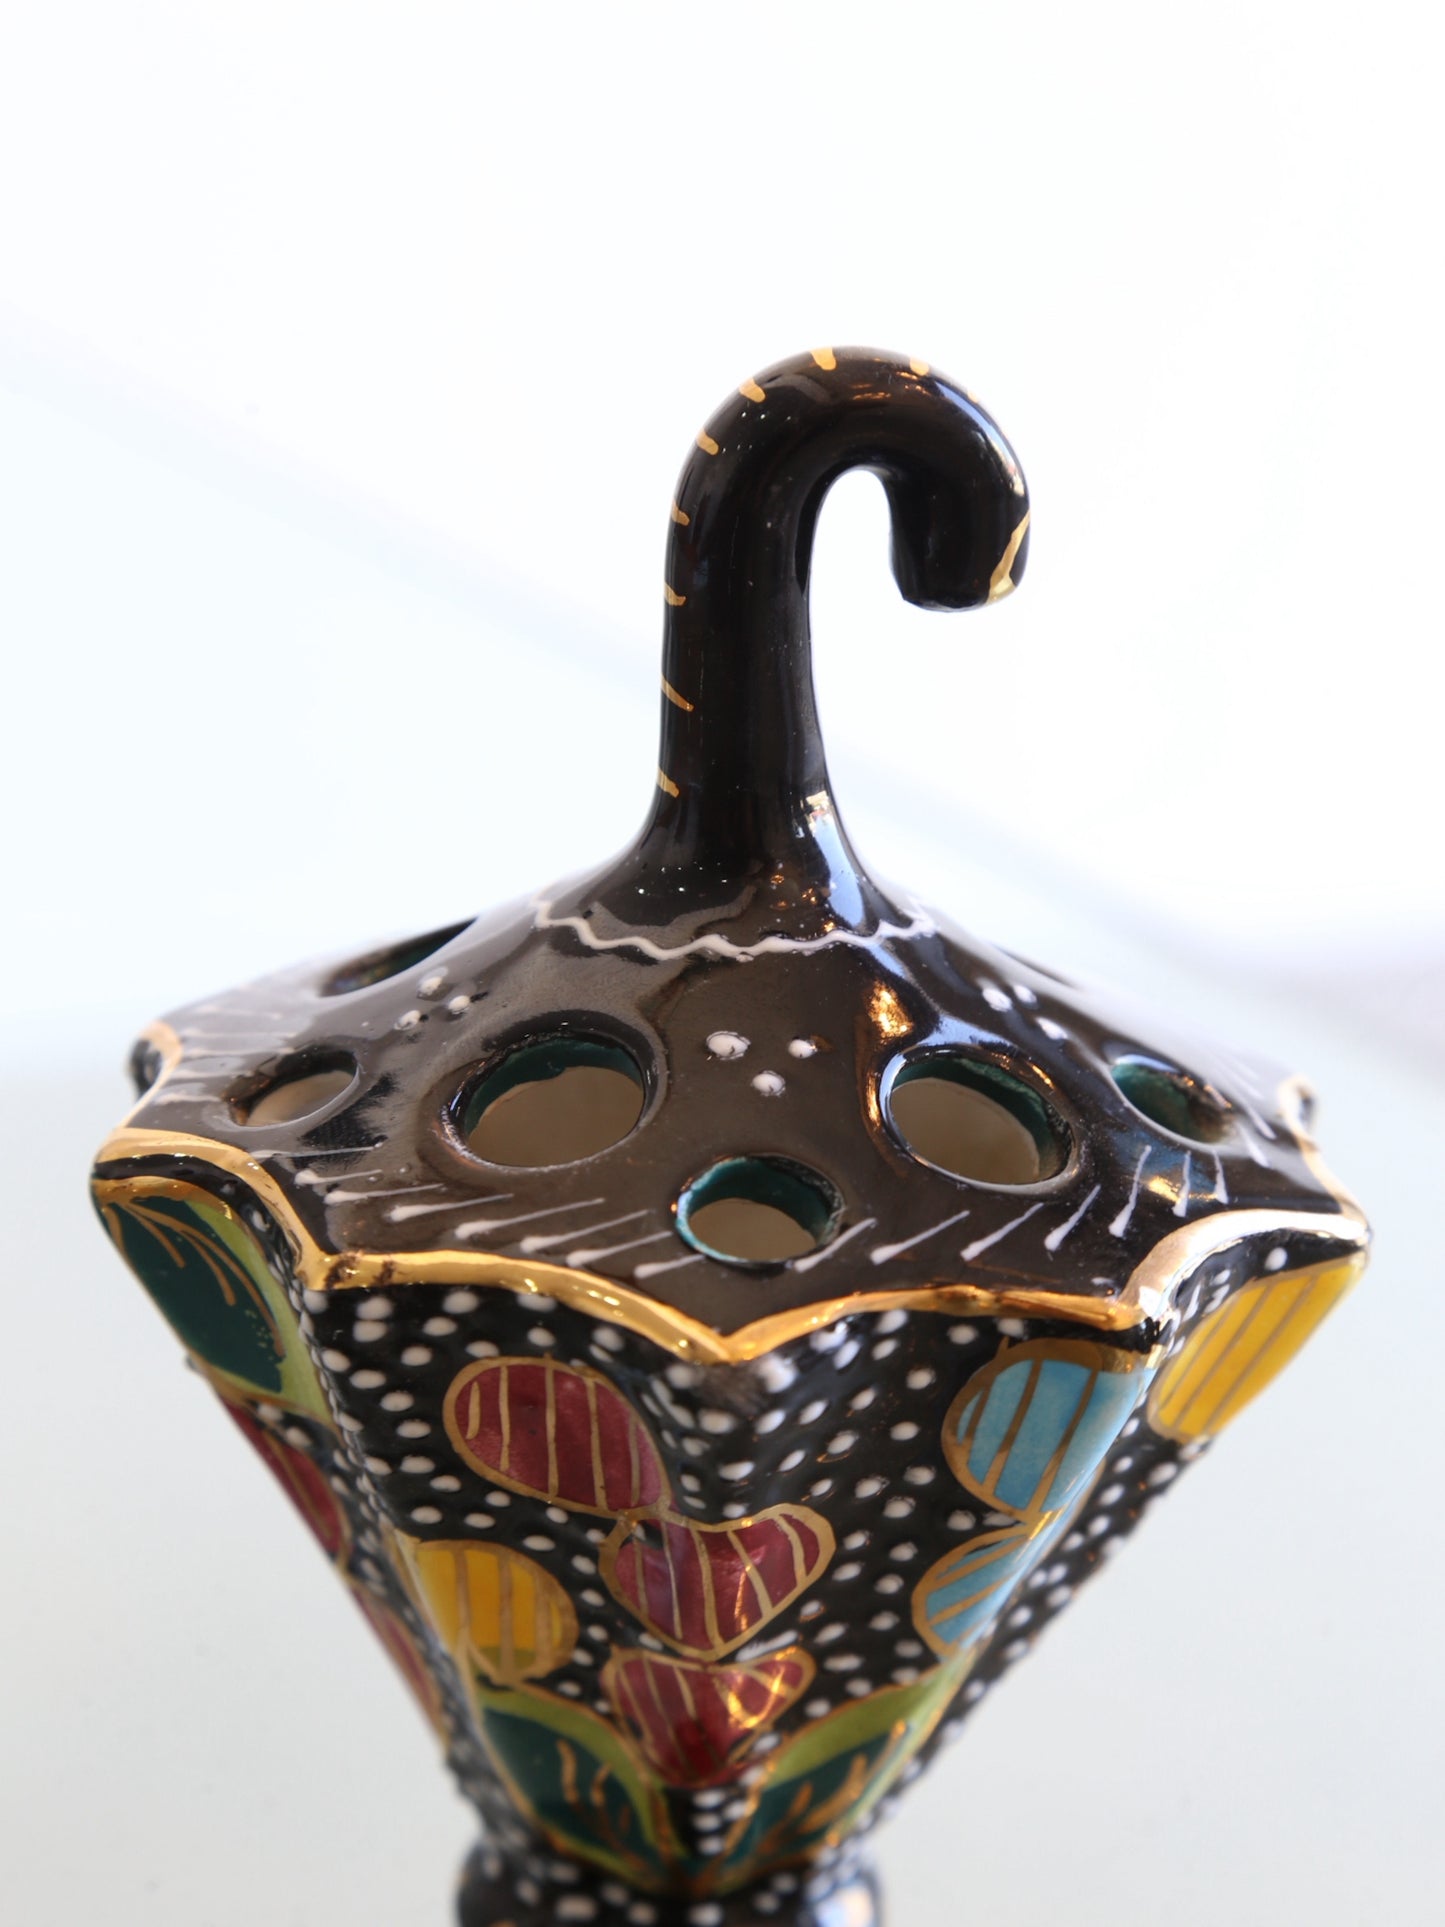 Volpi Deruta Italian Black and Gold Centrepiece & Desk Accessory Ceramic, 1960s